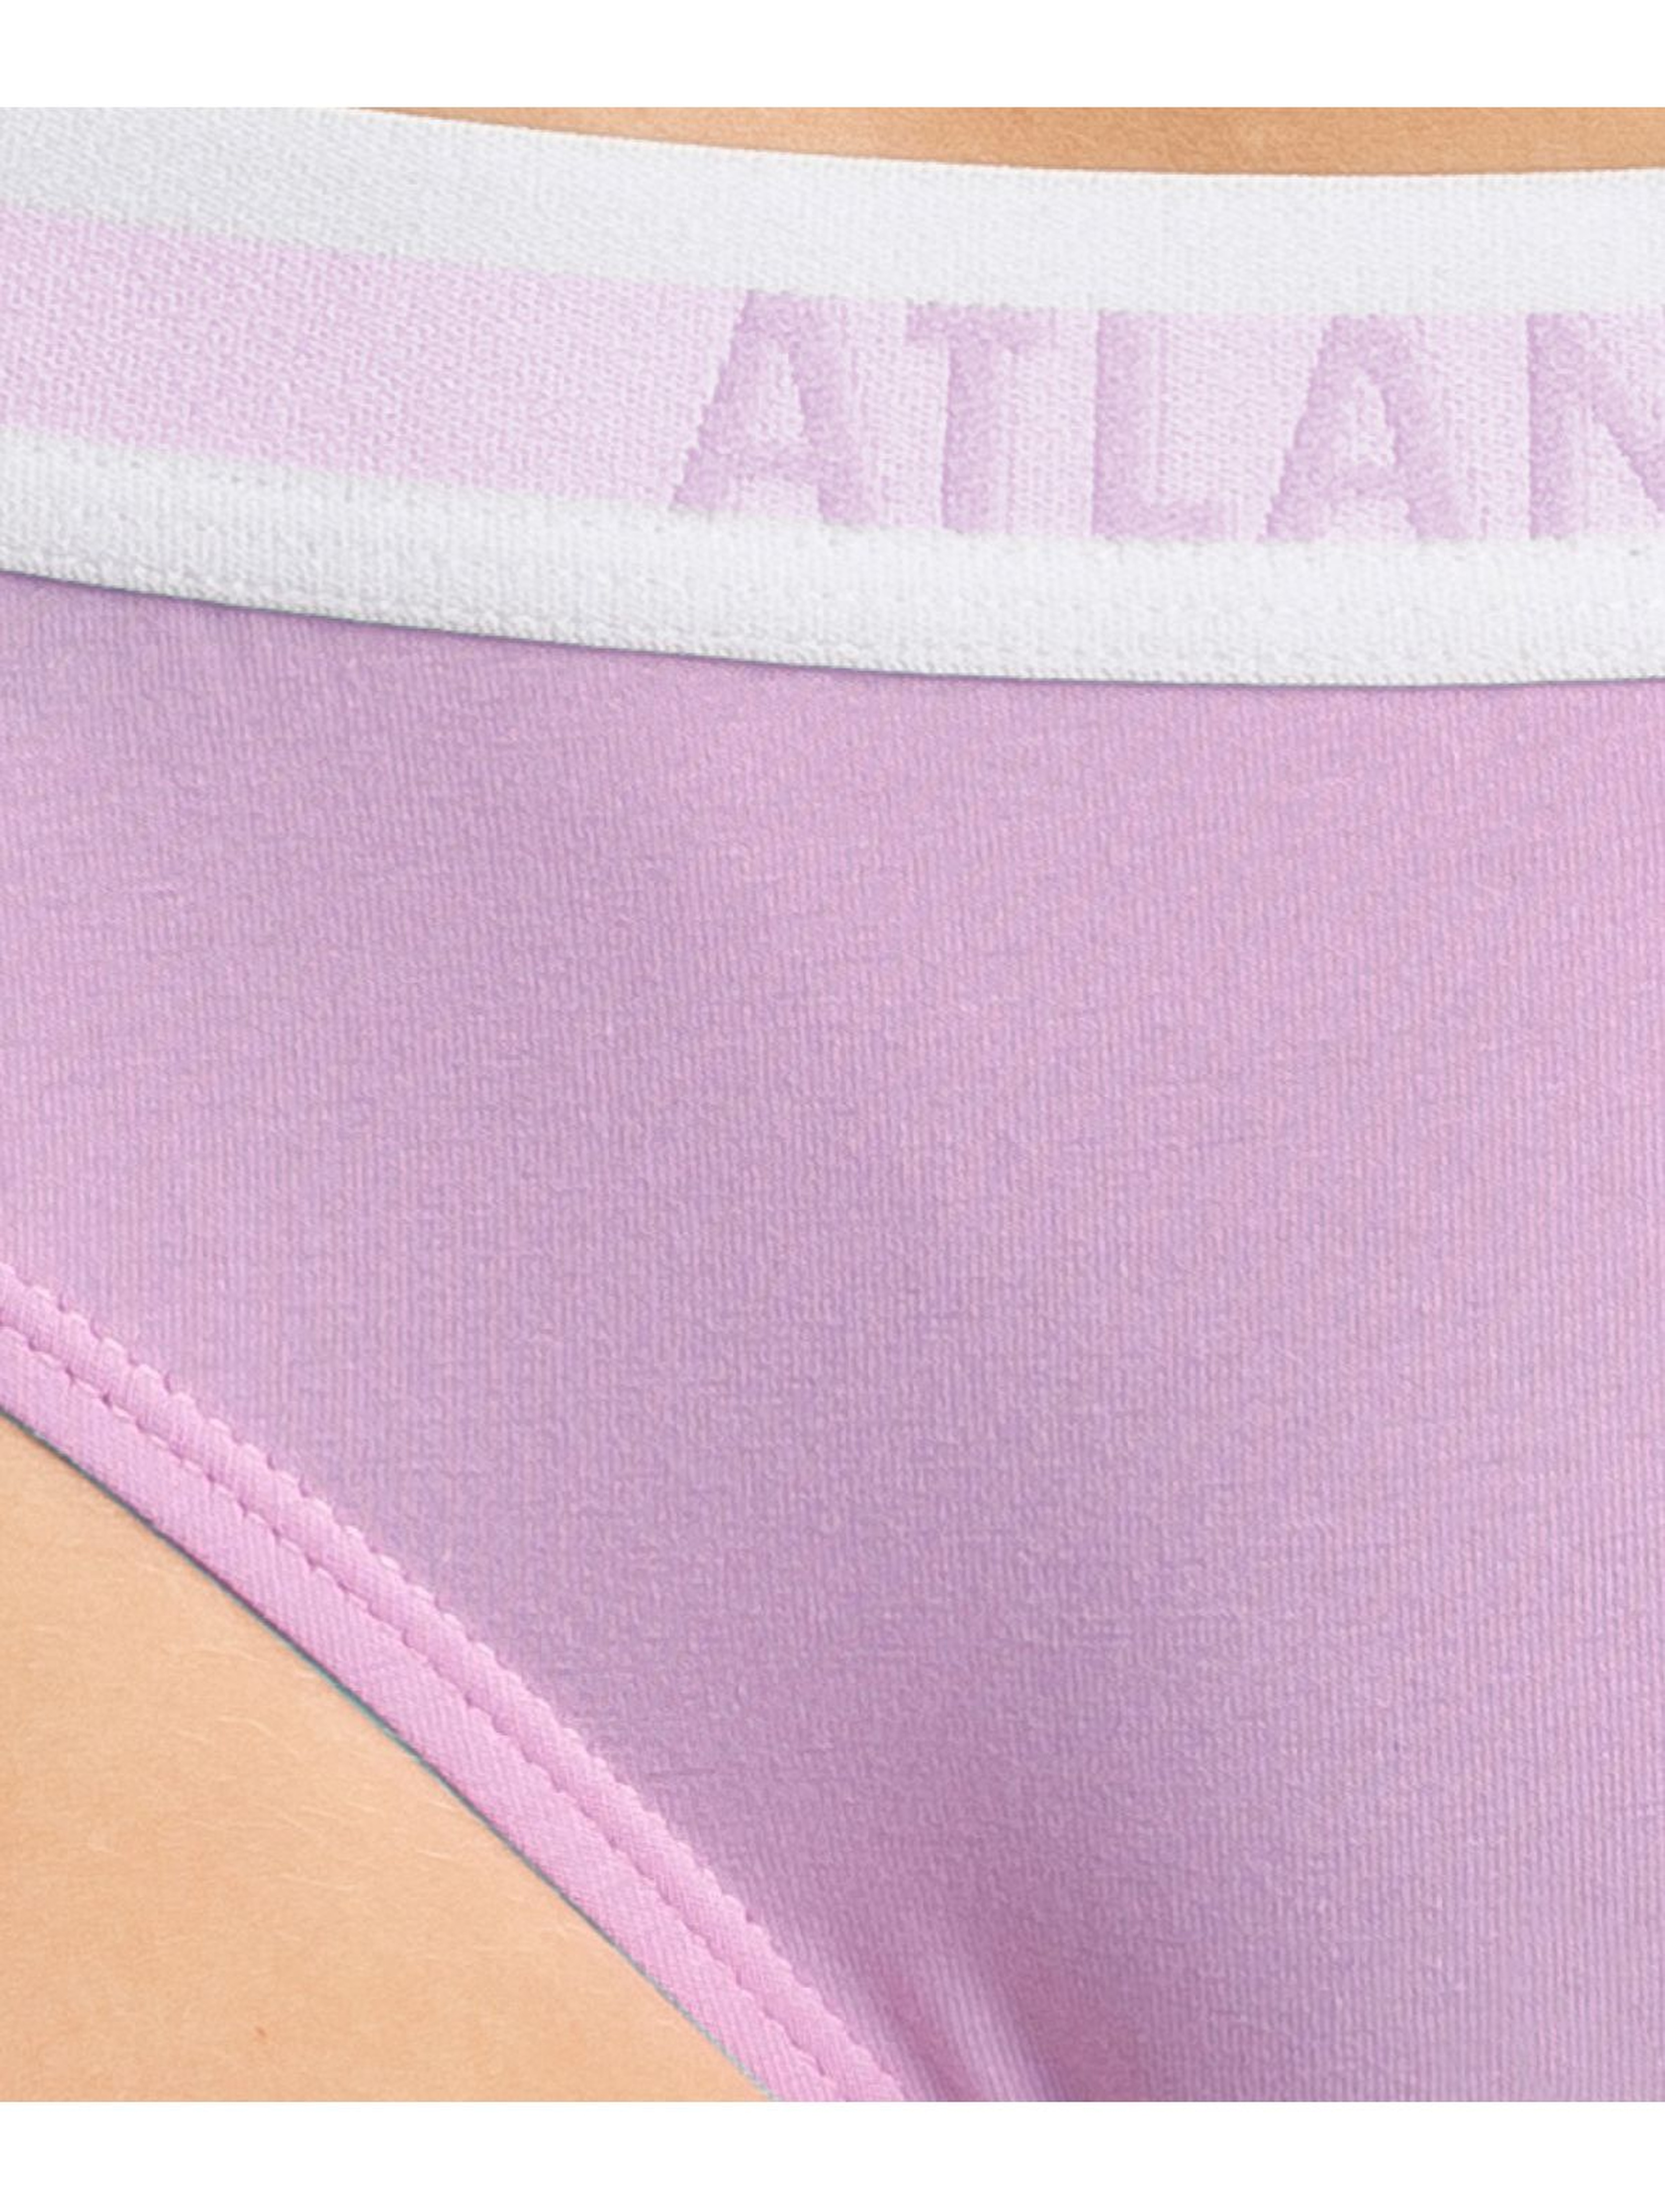 Figi damskie bikini Atlantic - różowe, zielone, czarne 3szt